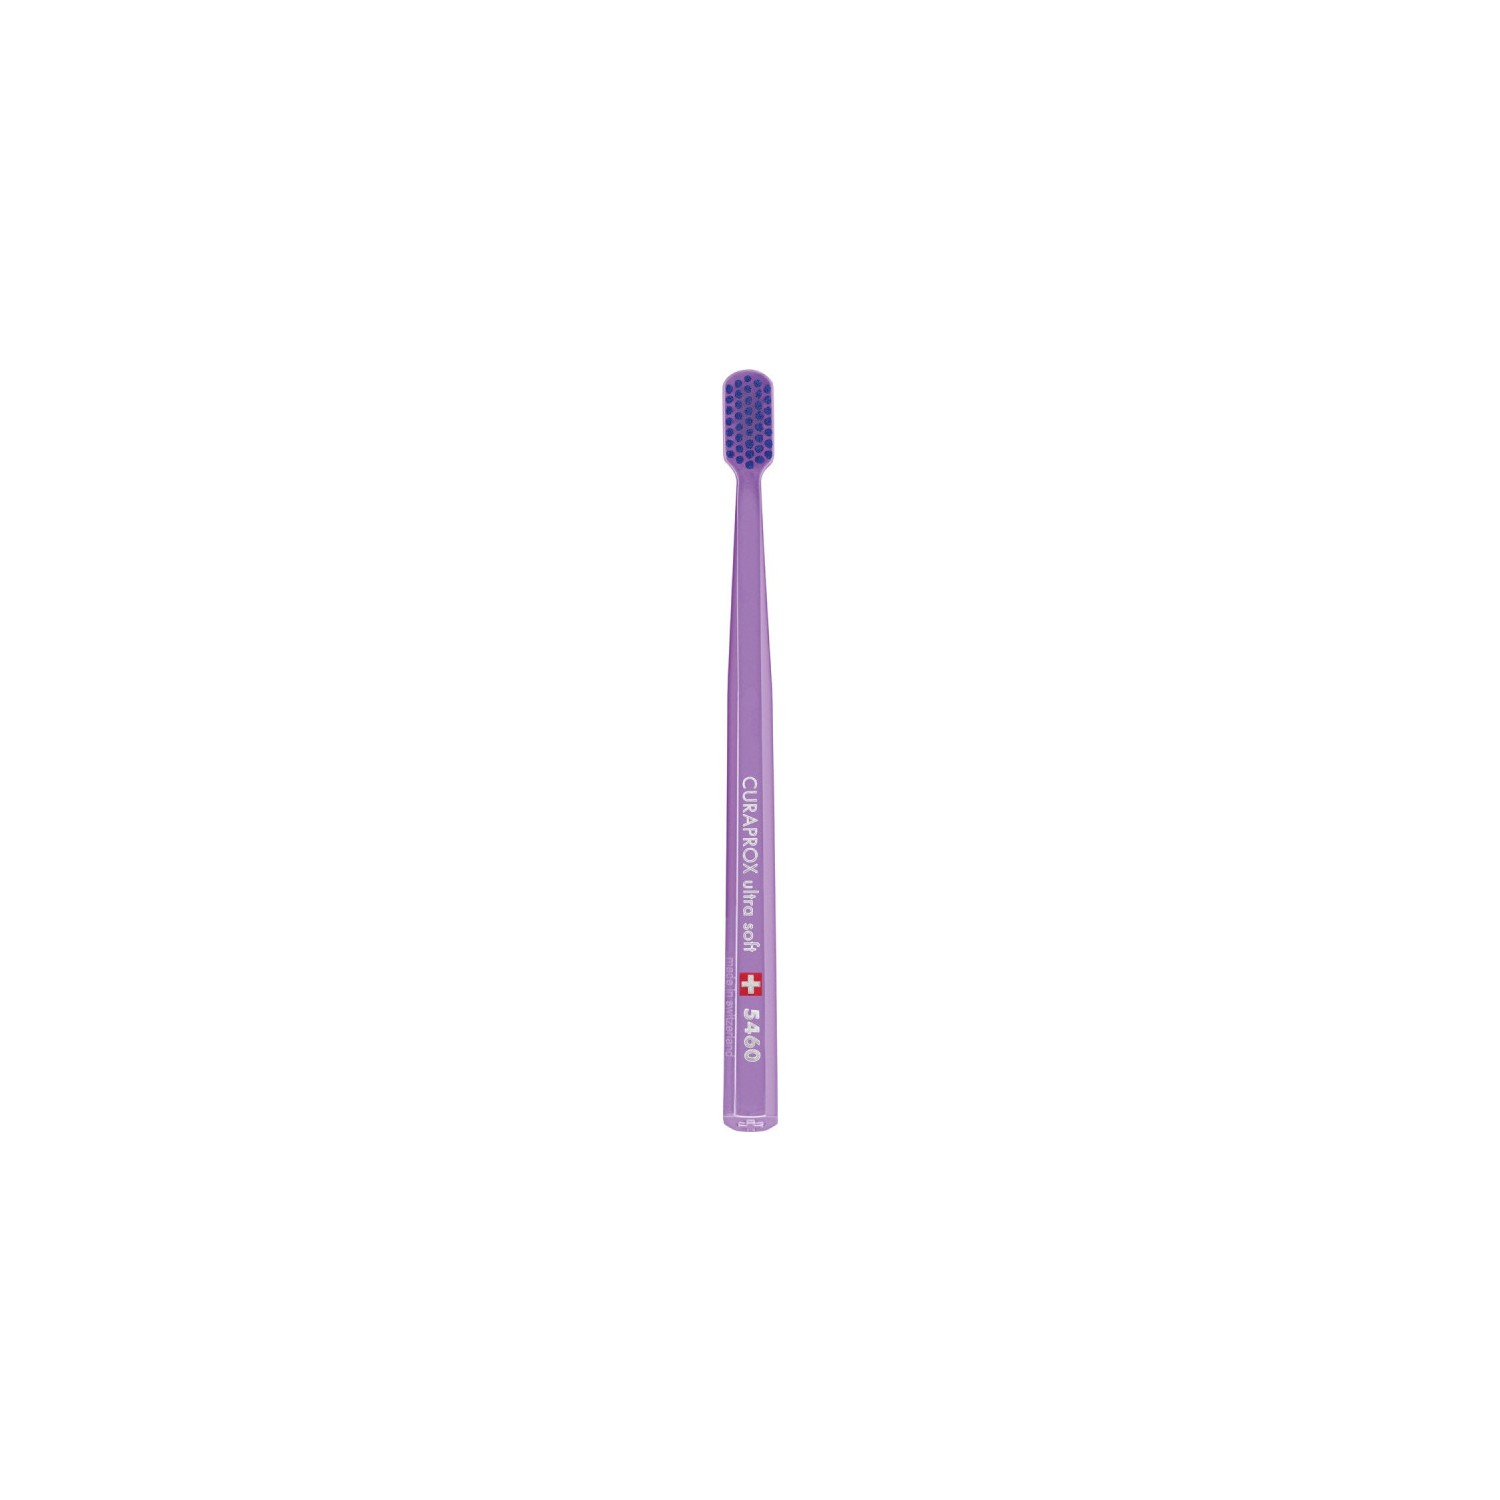 Зубная щетка Curaprox ультрамягкая CS5460, фиолетовый curaprox зубная щетка kids ultra soft 1 шт curaprox детская продукция